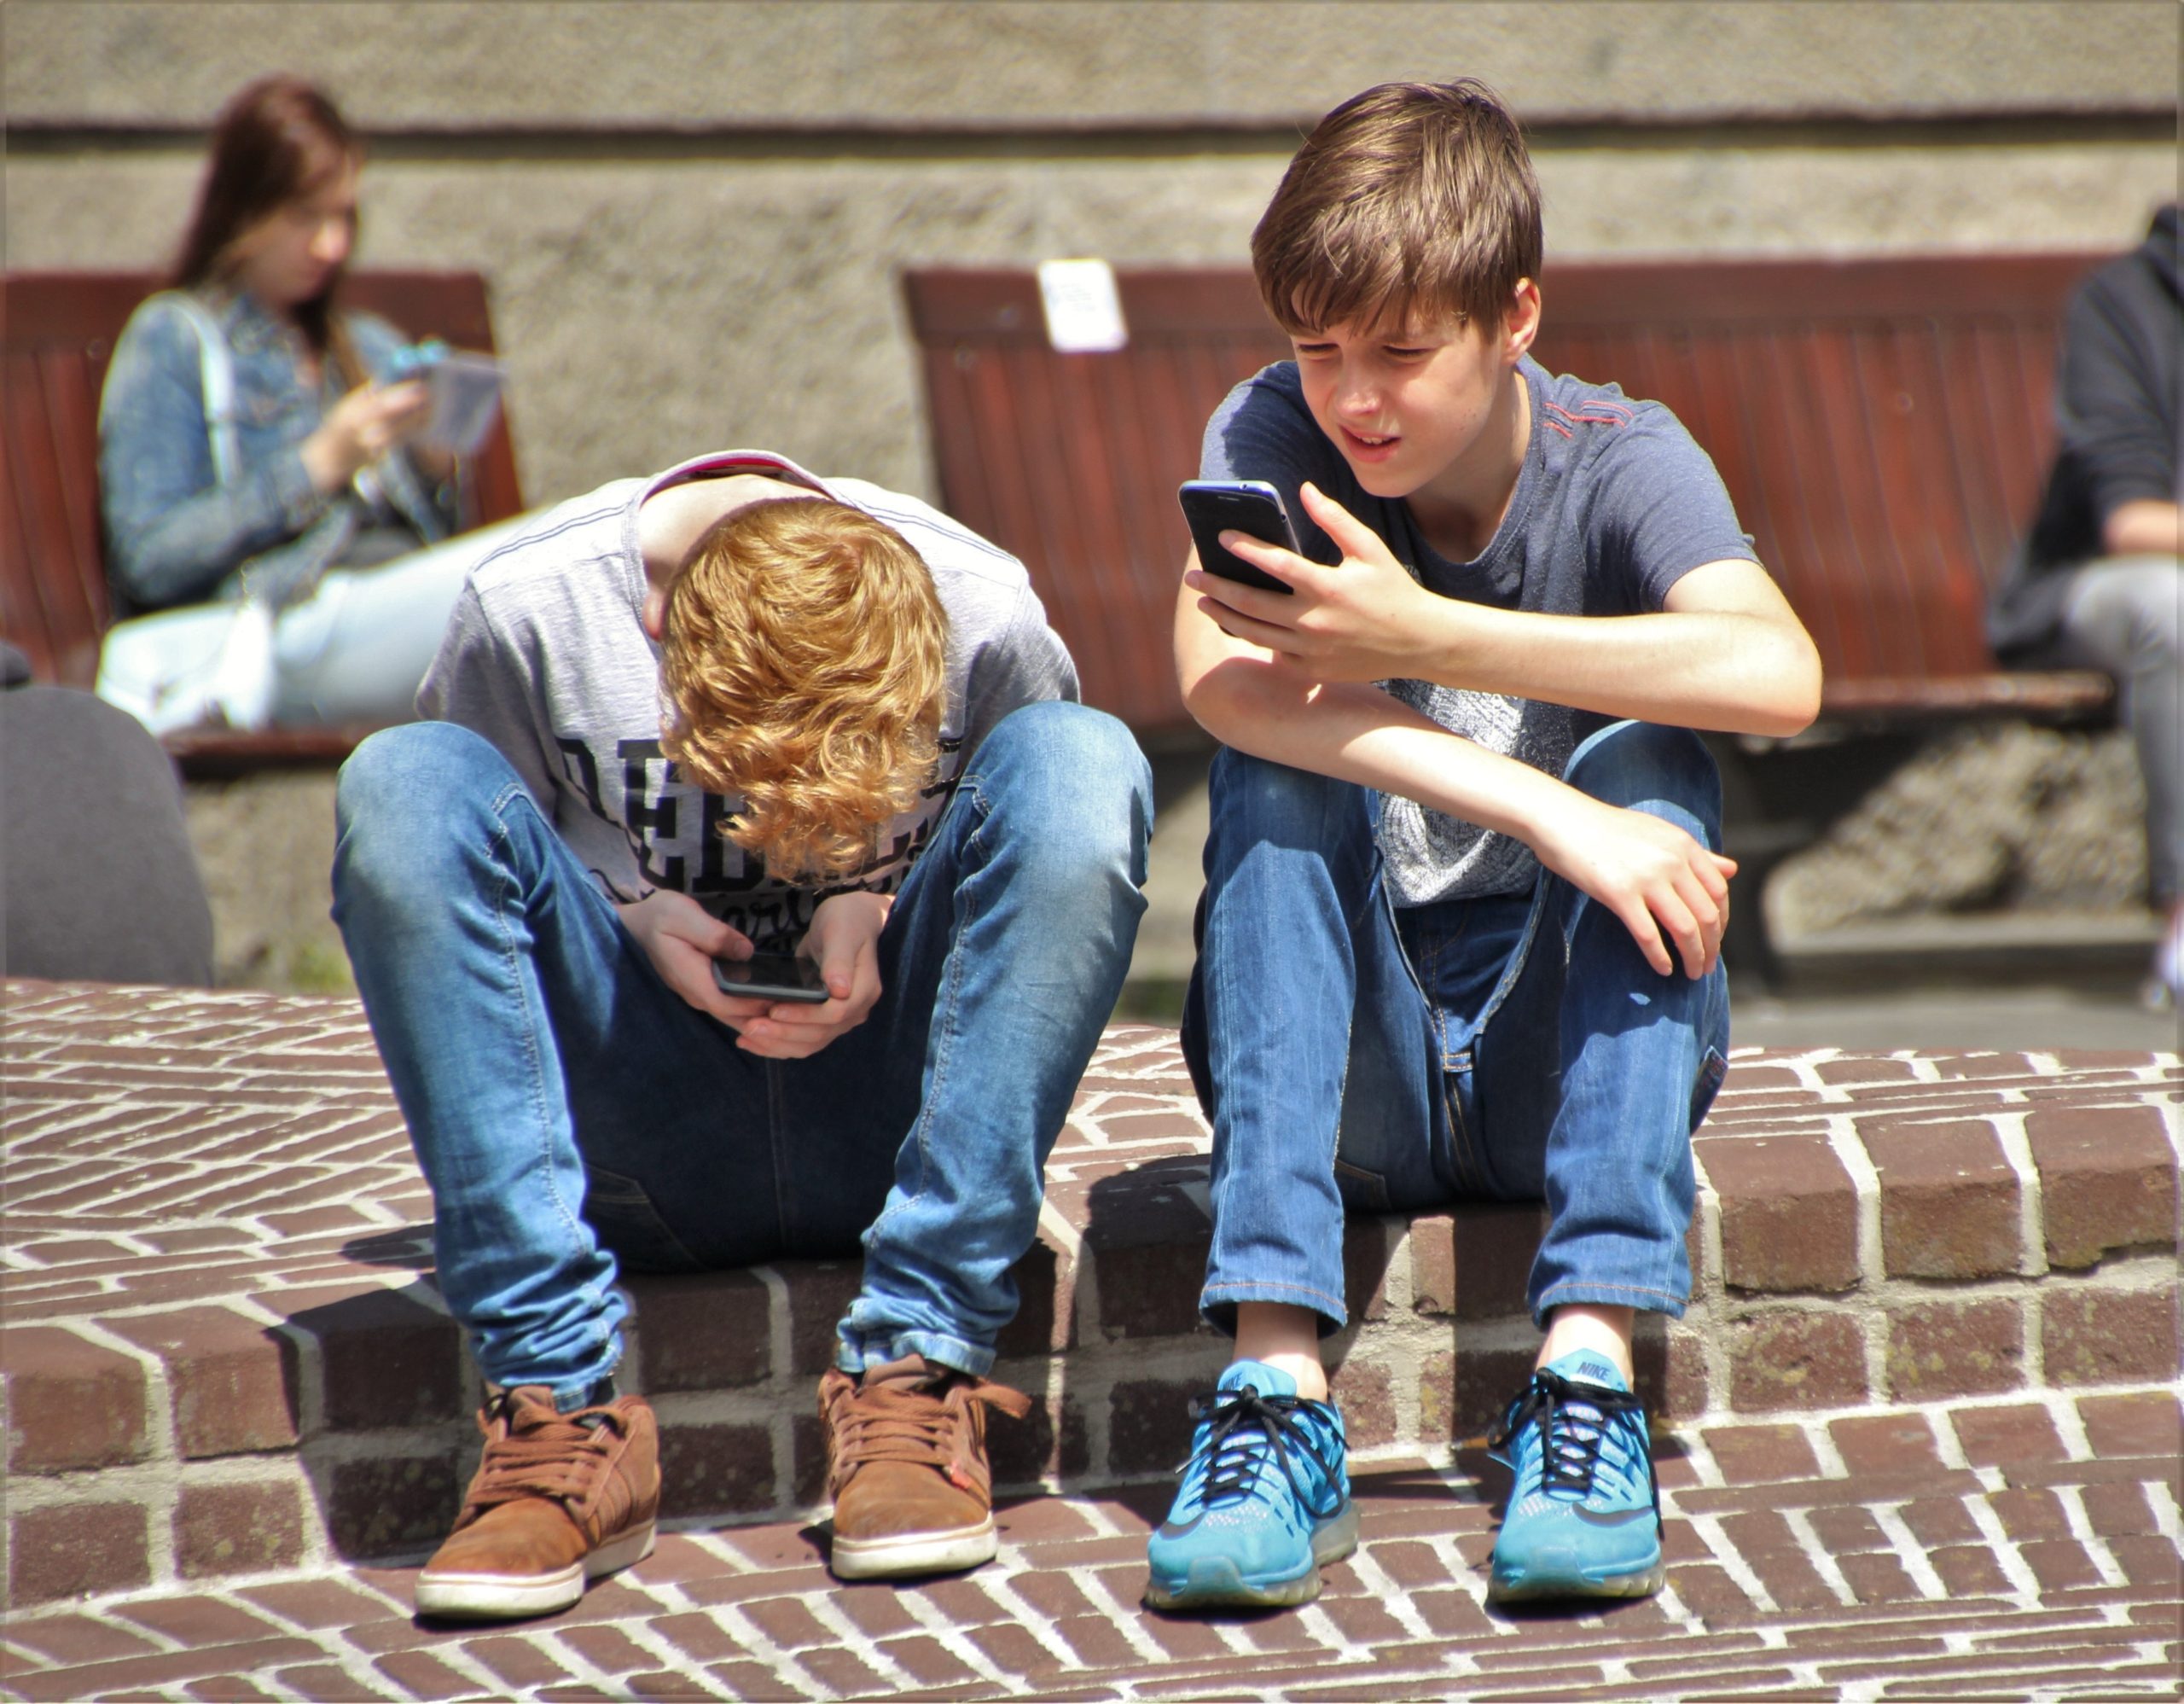 Teen boys on their phones